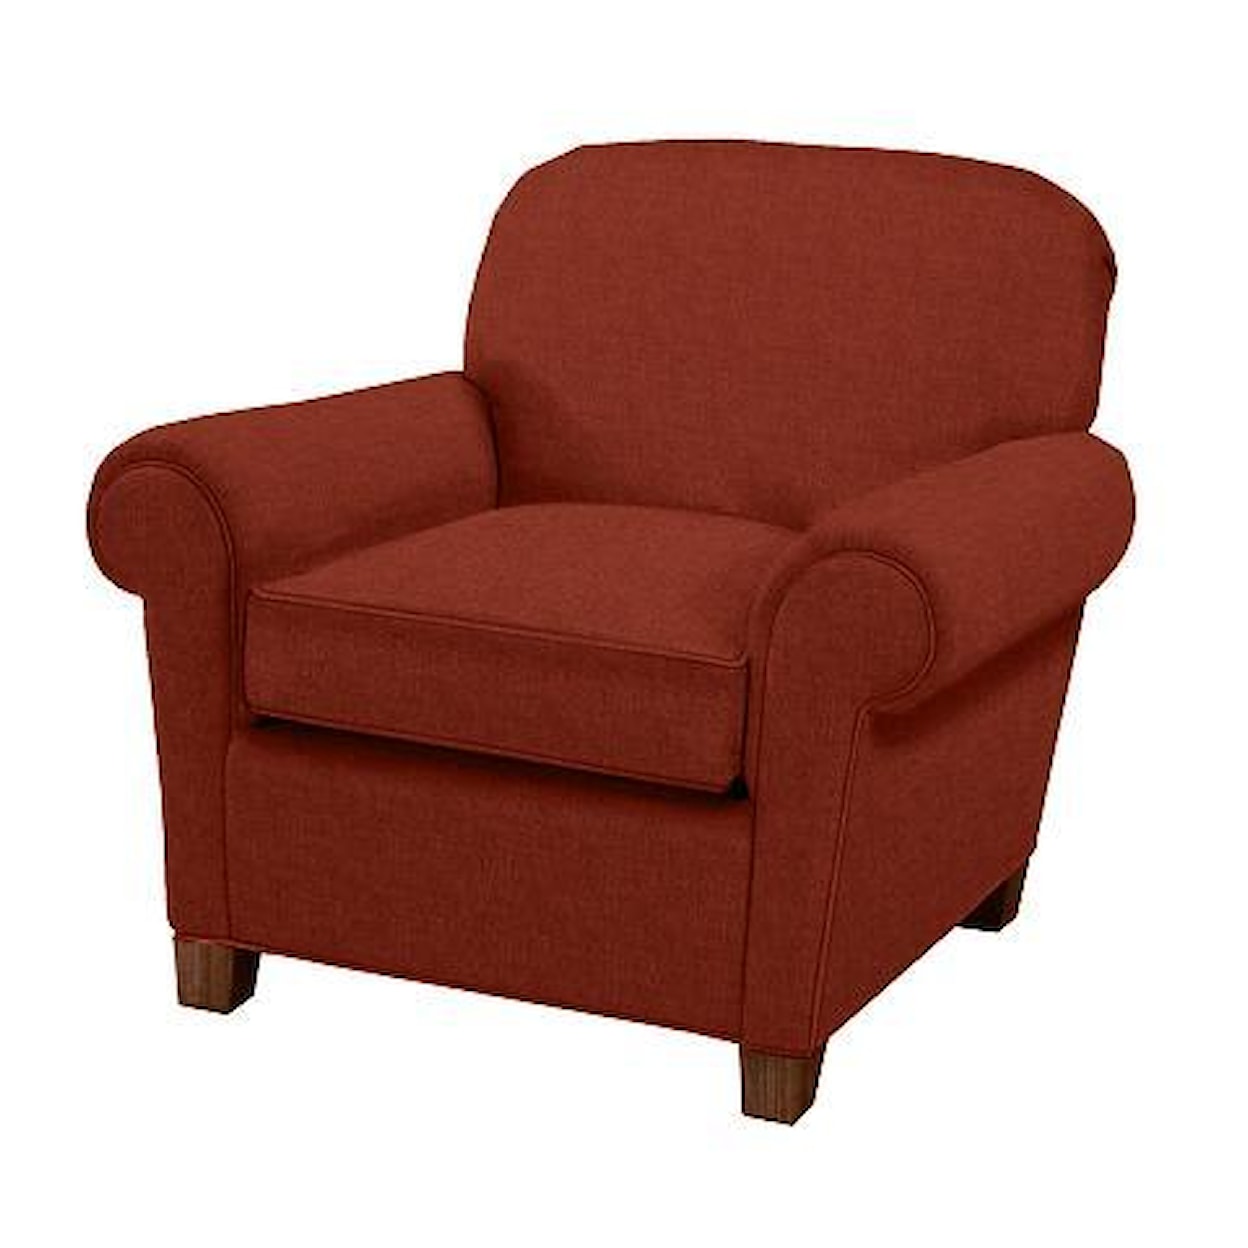 Norwalk Portland Upholstered Chair